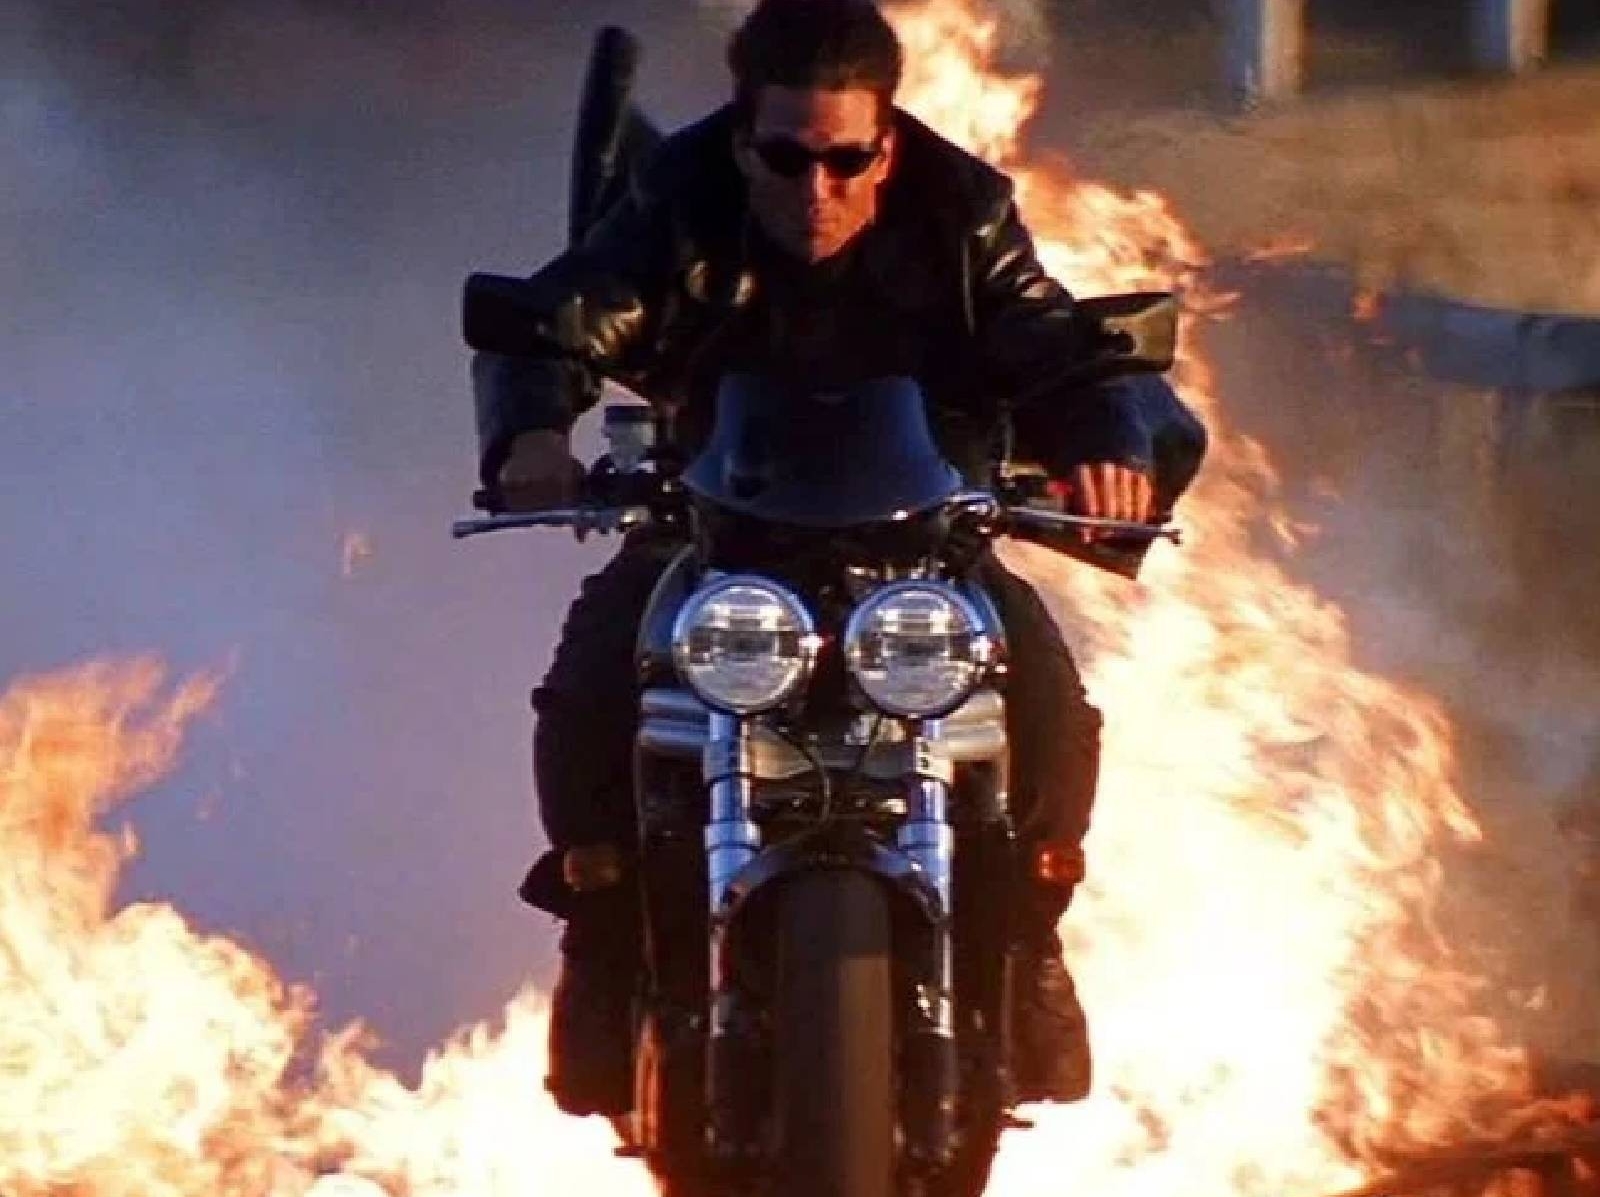 湯姆克魯斯歷代電影 8 台摩托車、重機，《捍衛戰士》、《不可能任務》中的御用坐騎！